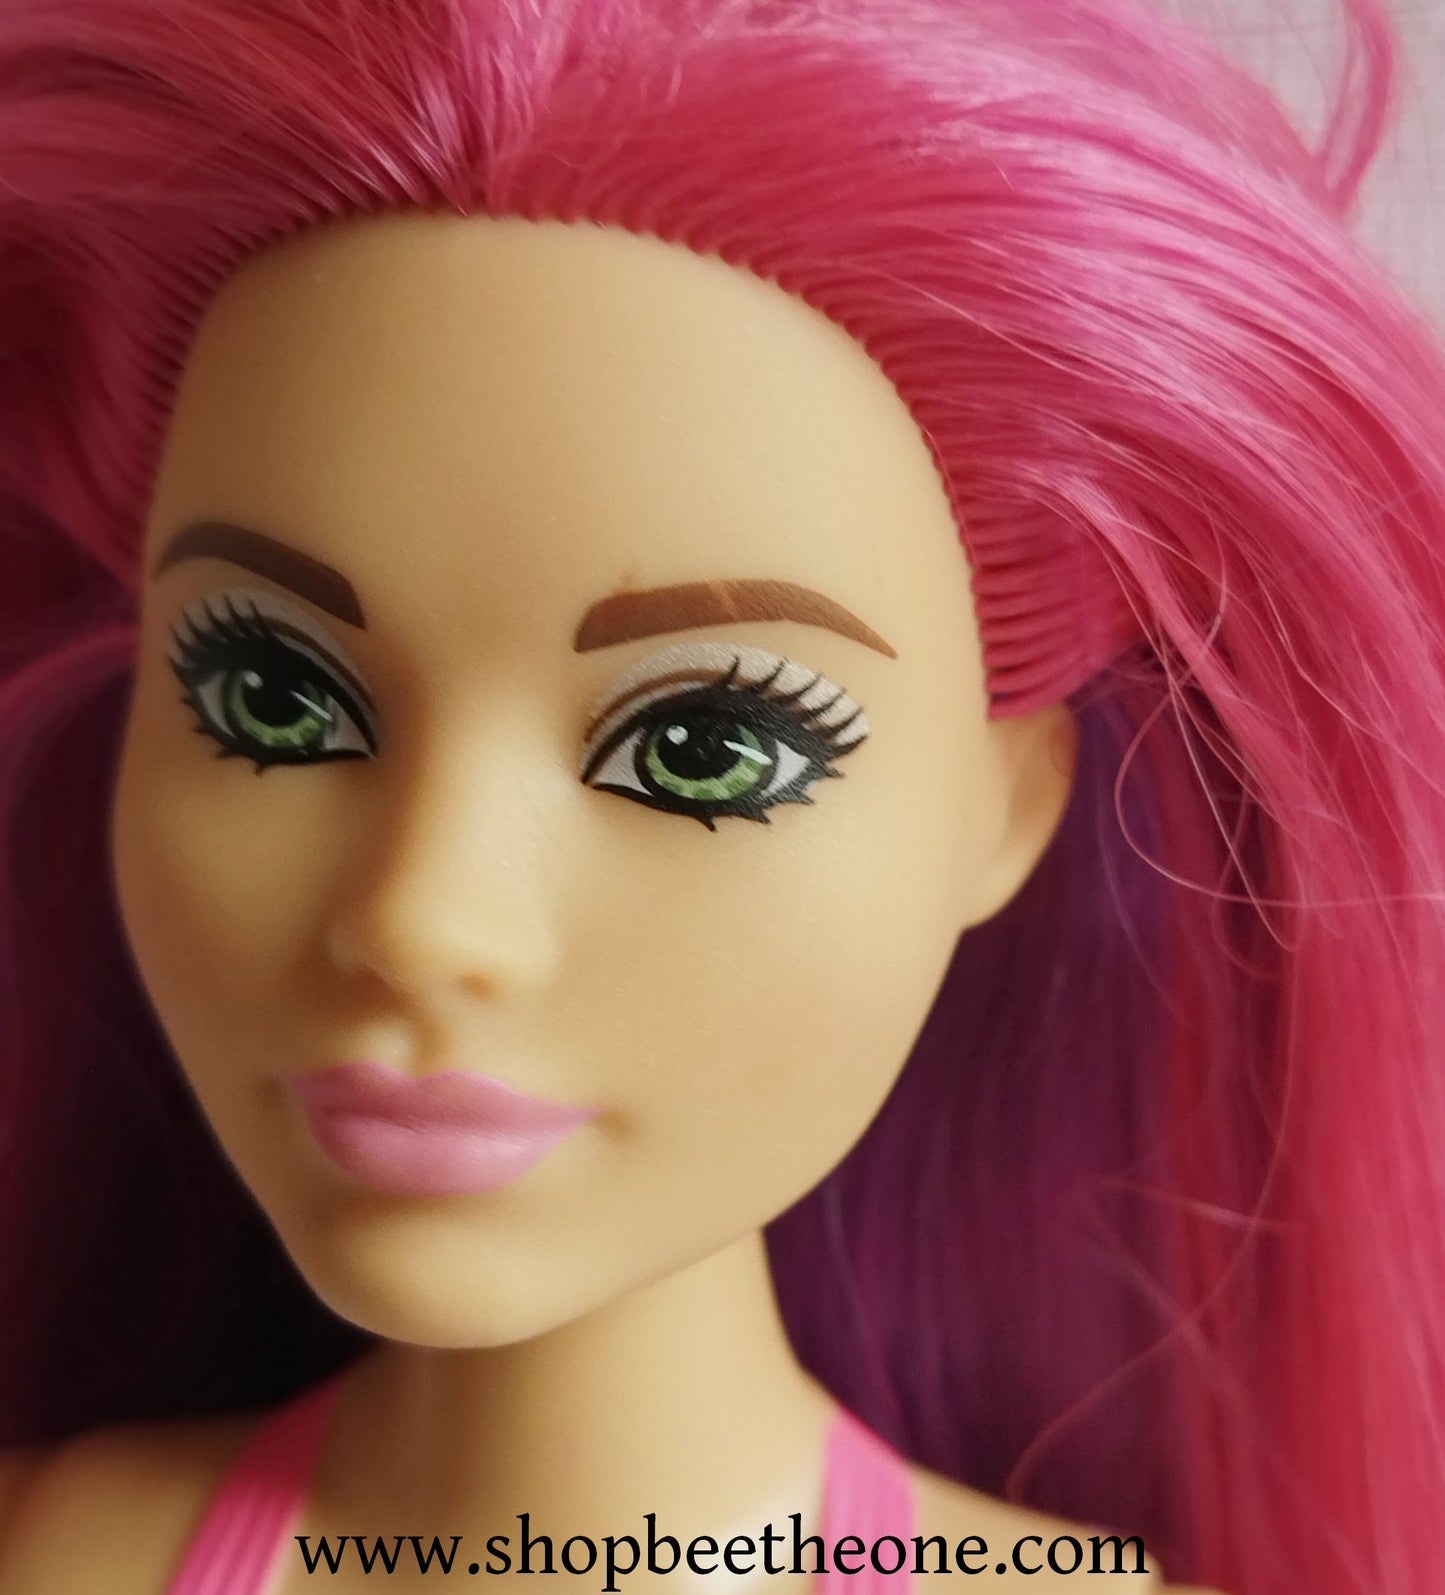 Barbie Dreamtopia Sirène Curvy Rainbow Cove FJC93 - Mattel 2018 - Poupée - Accessoire